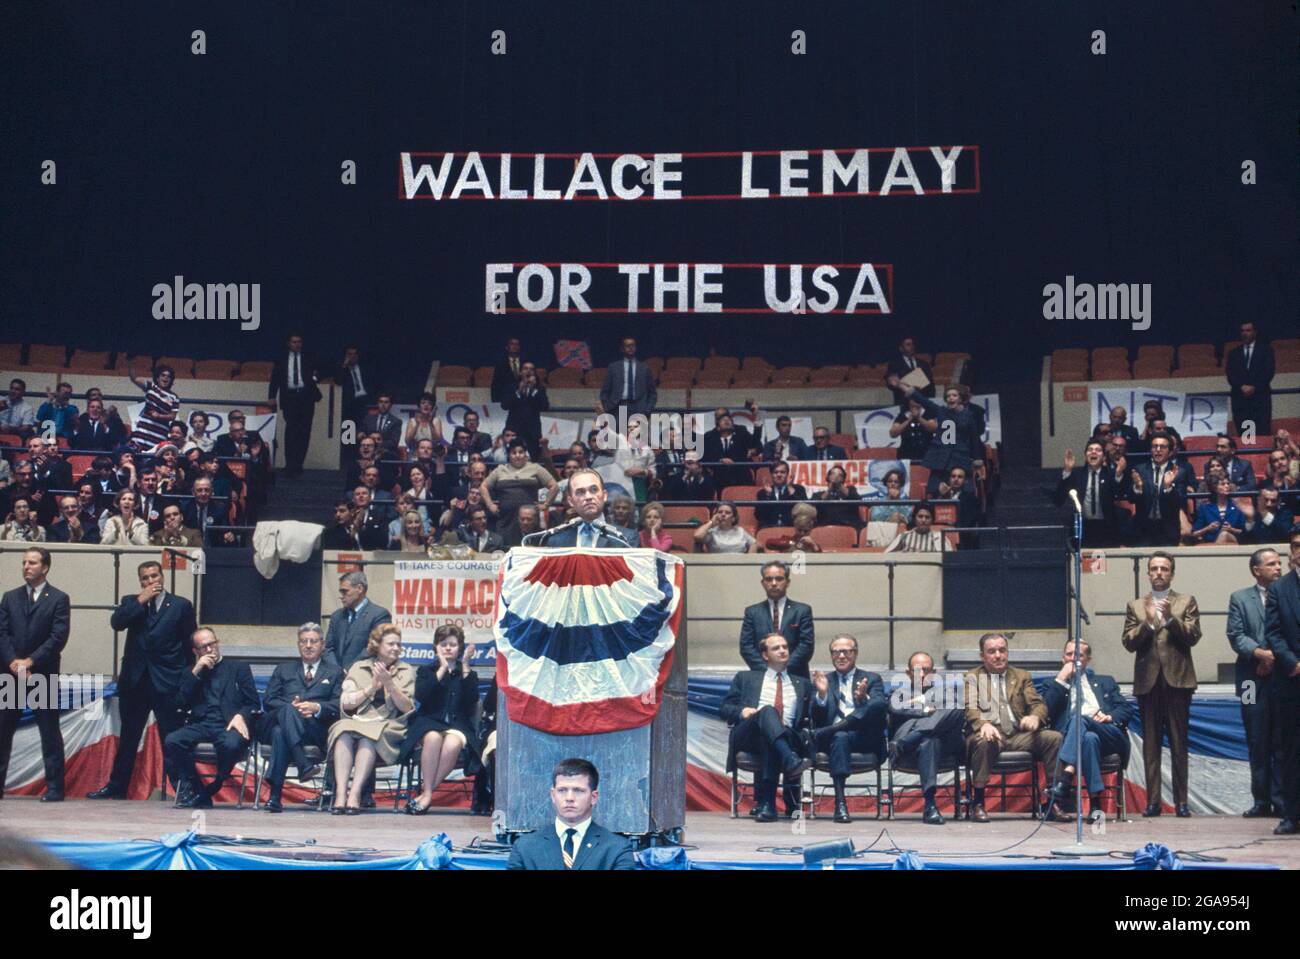 George Wallace s'exprimant lors de son rassemblement de campagne présidentielle, Madison Square Garden, New York, New York, États-Unis, Bernard Gotfryd, octobre 24,1968 Banque D'Images